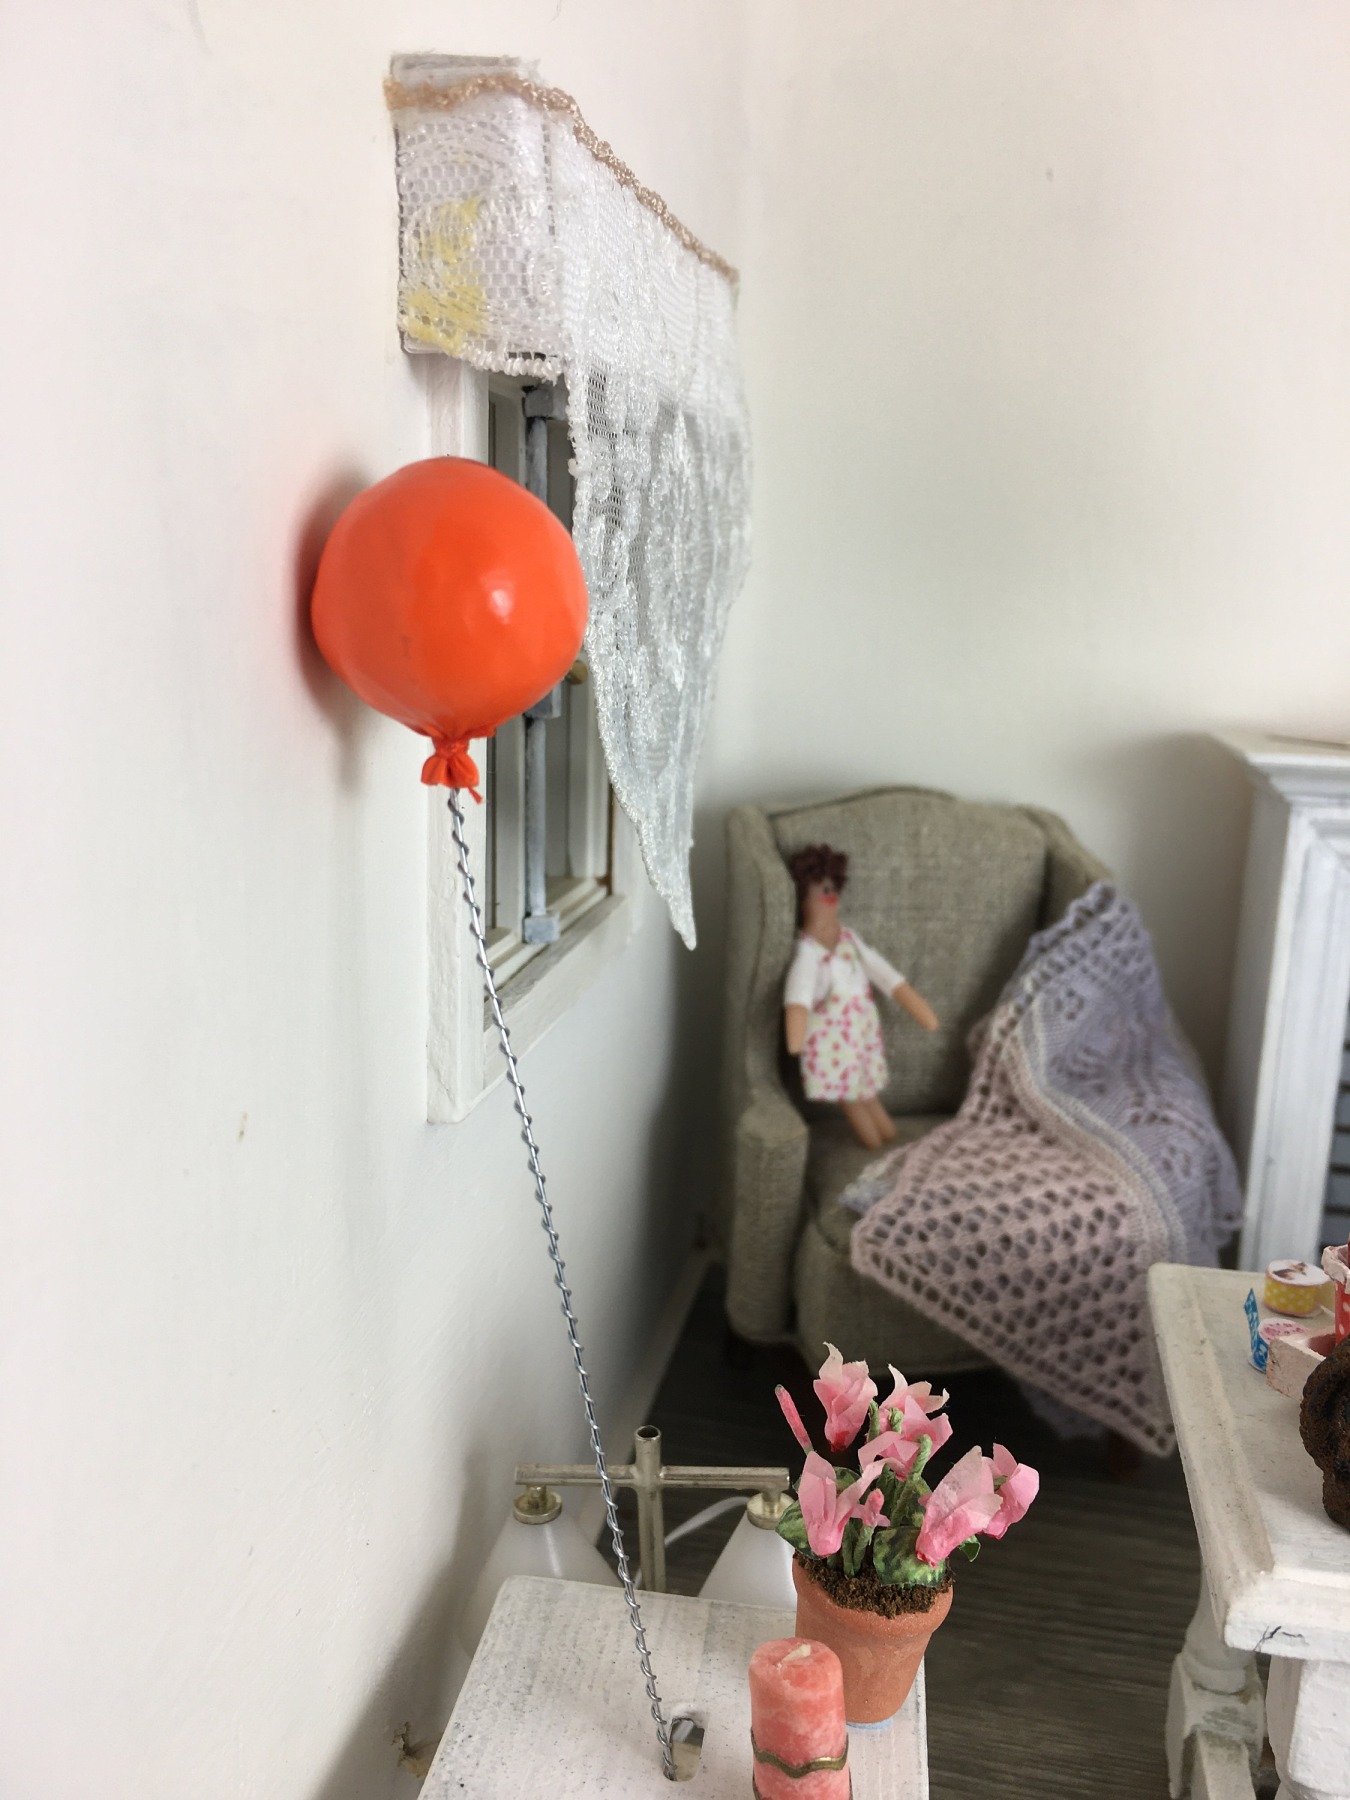 Luftballon in 1:12, Spielzeug für das Puppenhaus Kind. 2